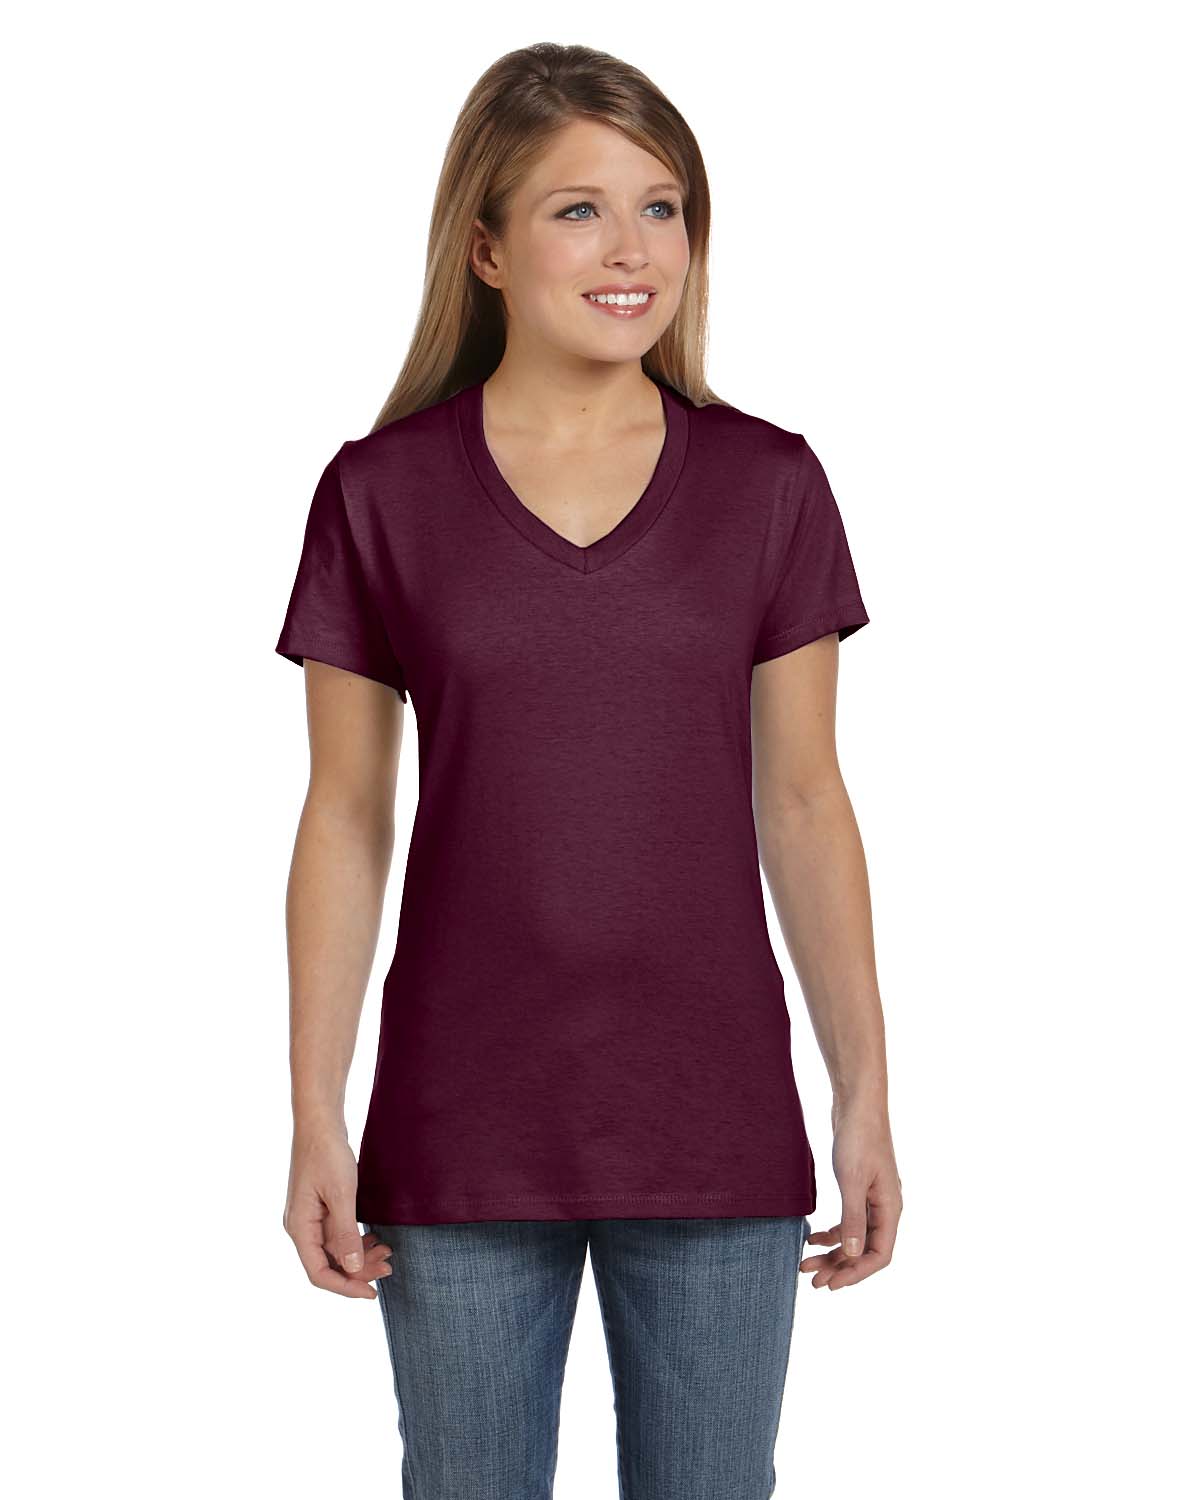 Hanes Women's Nano-T V-Neck T-Shirt - image 1 of 2